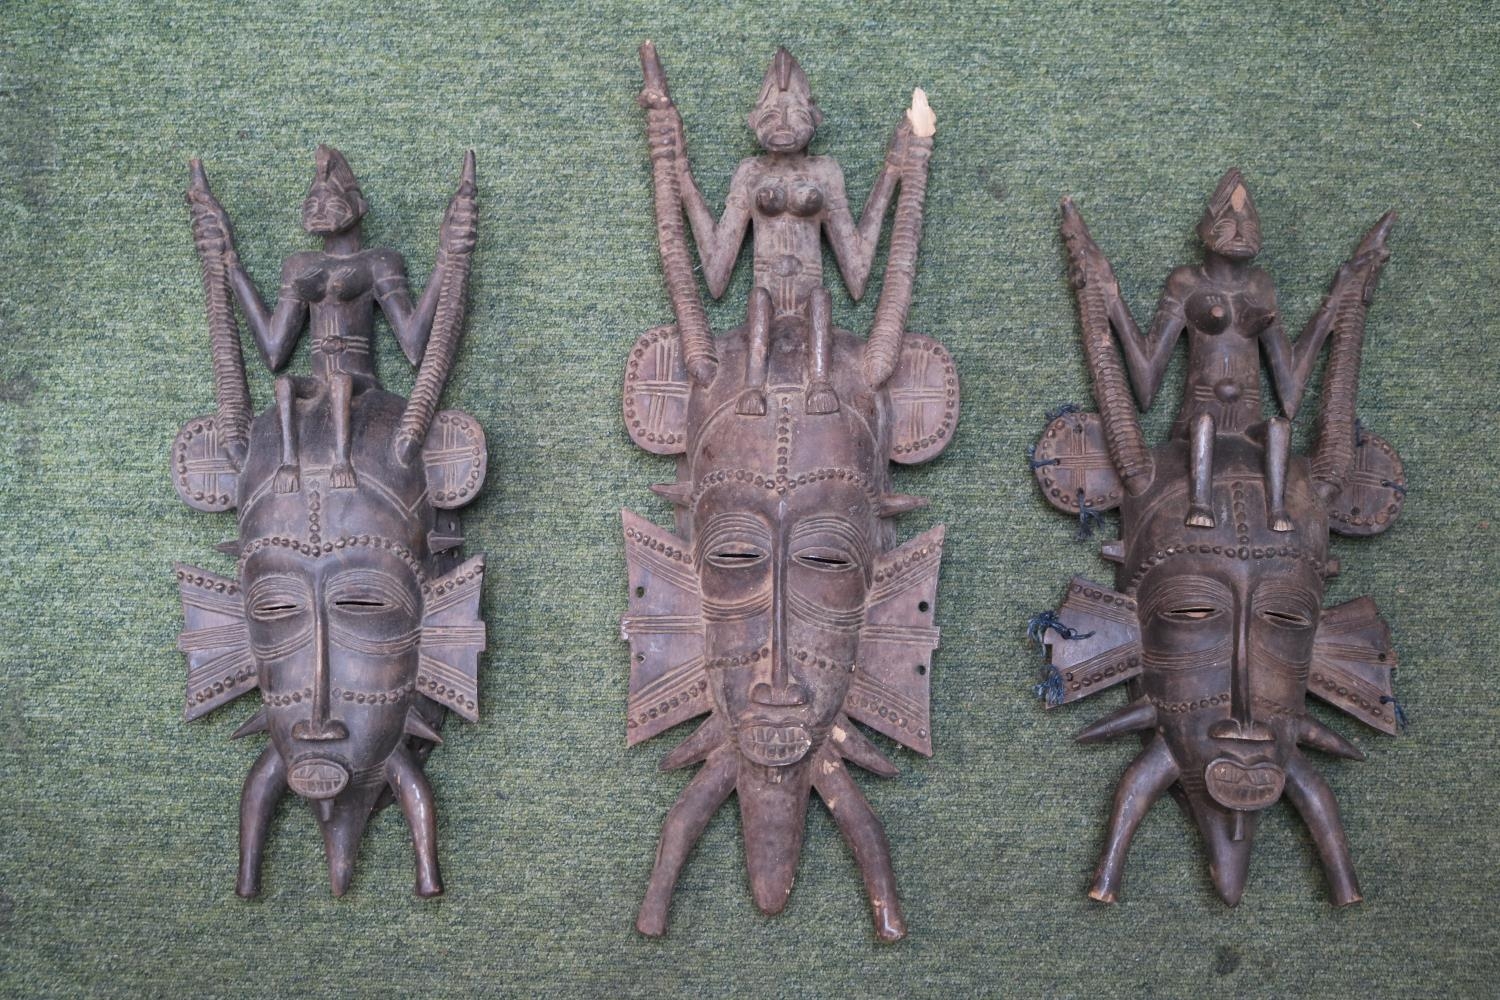 3 Ethnographic Ivory Coast Kpeliye Senoufo Masks. Largest 59cm in Length - Image 2 of 5